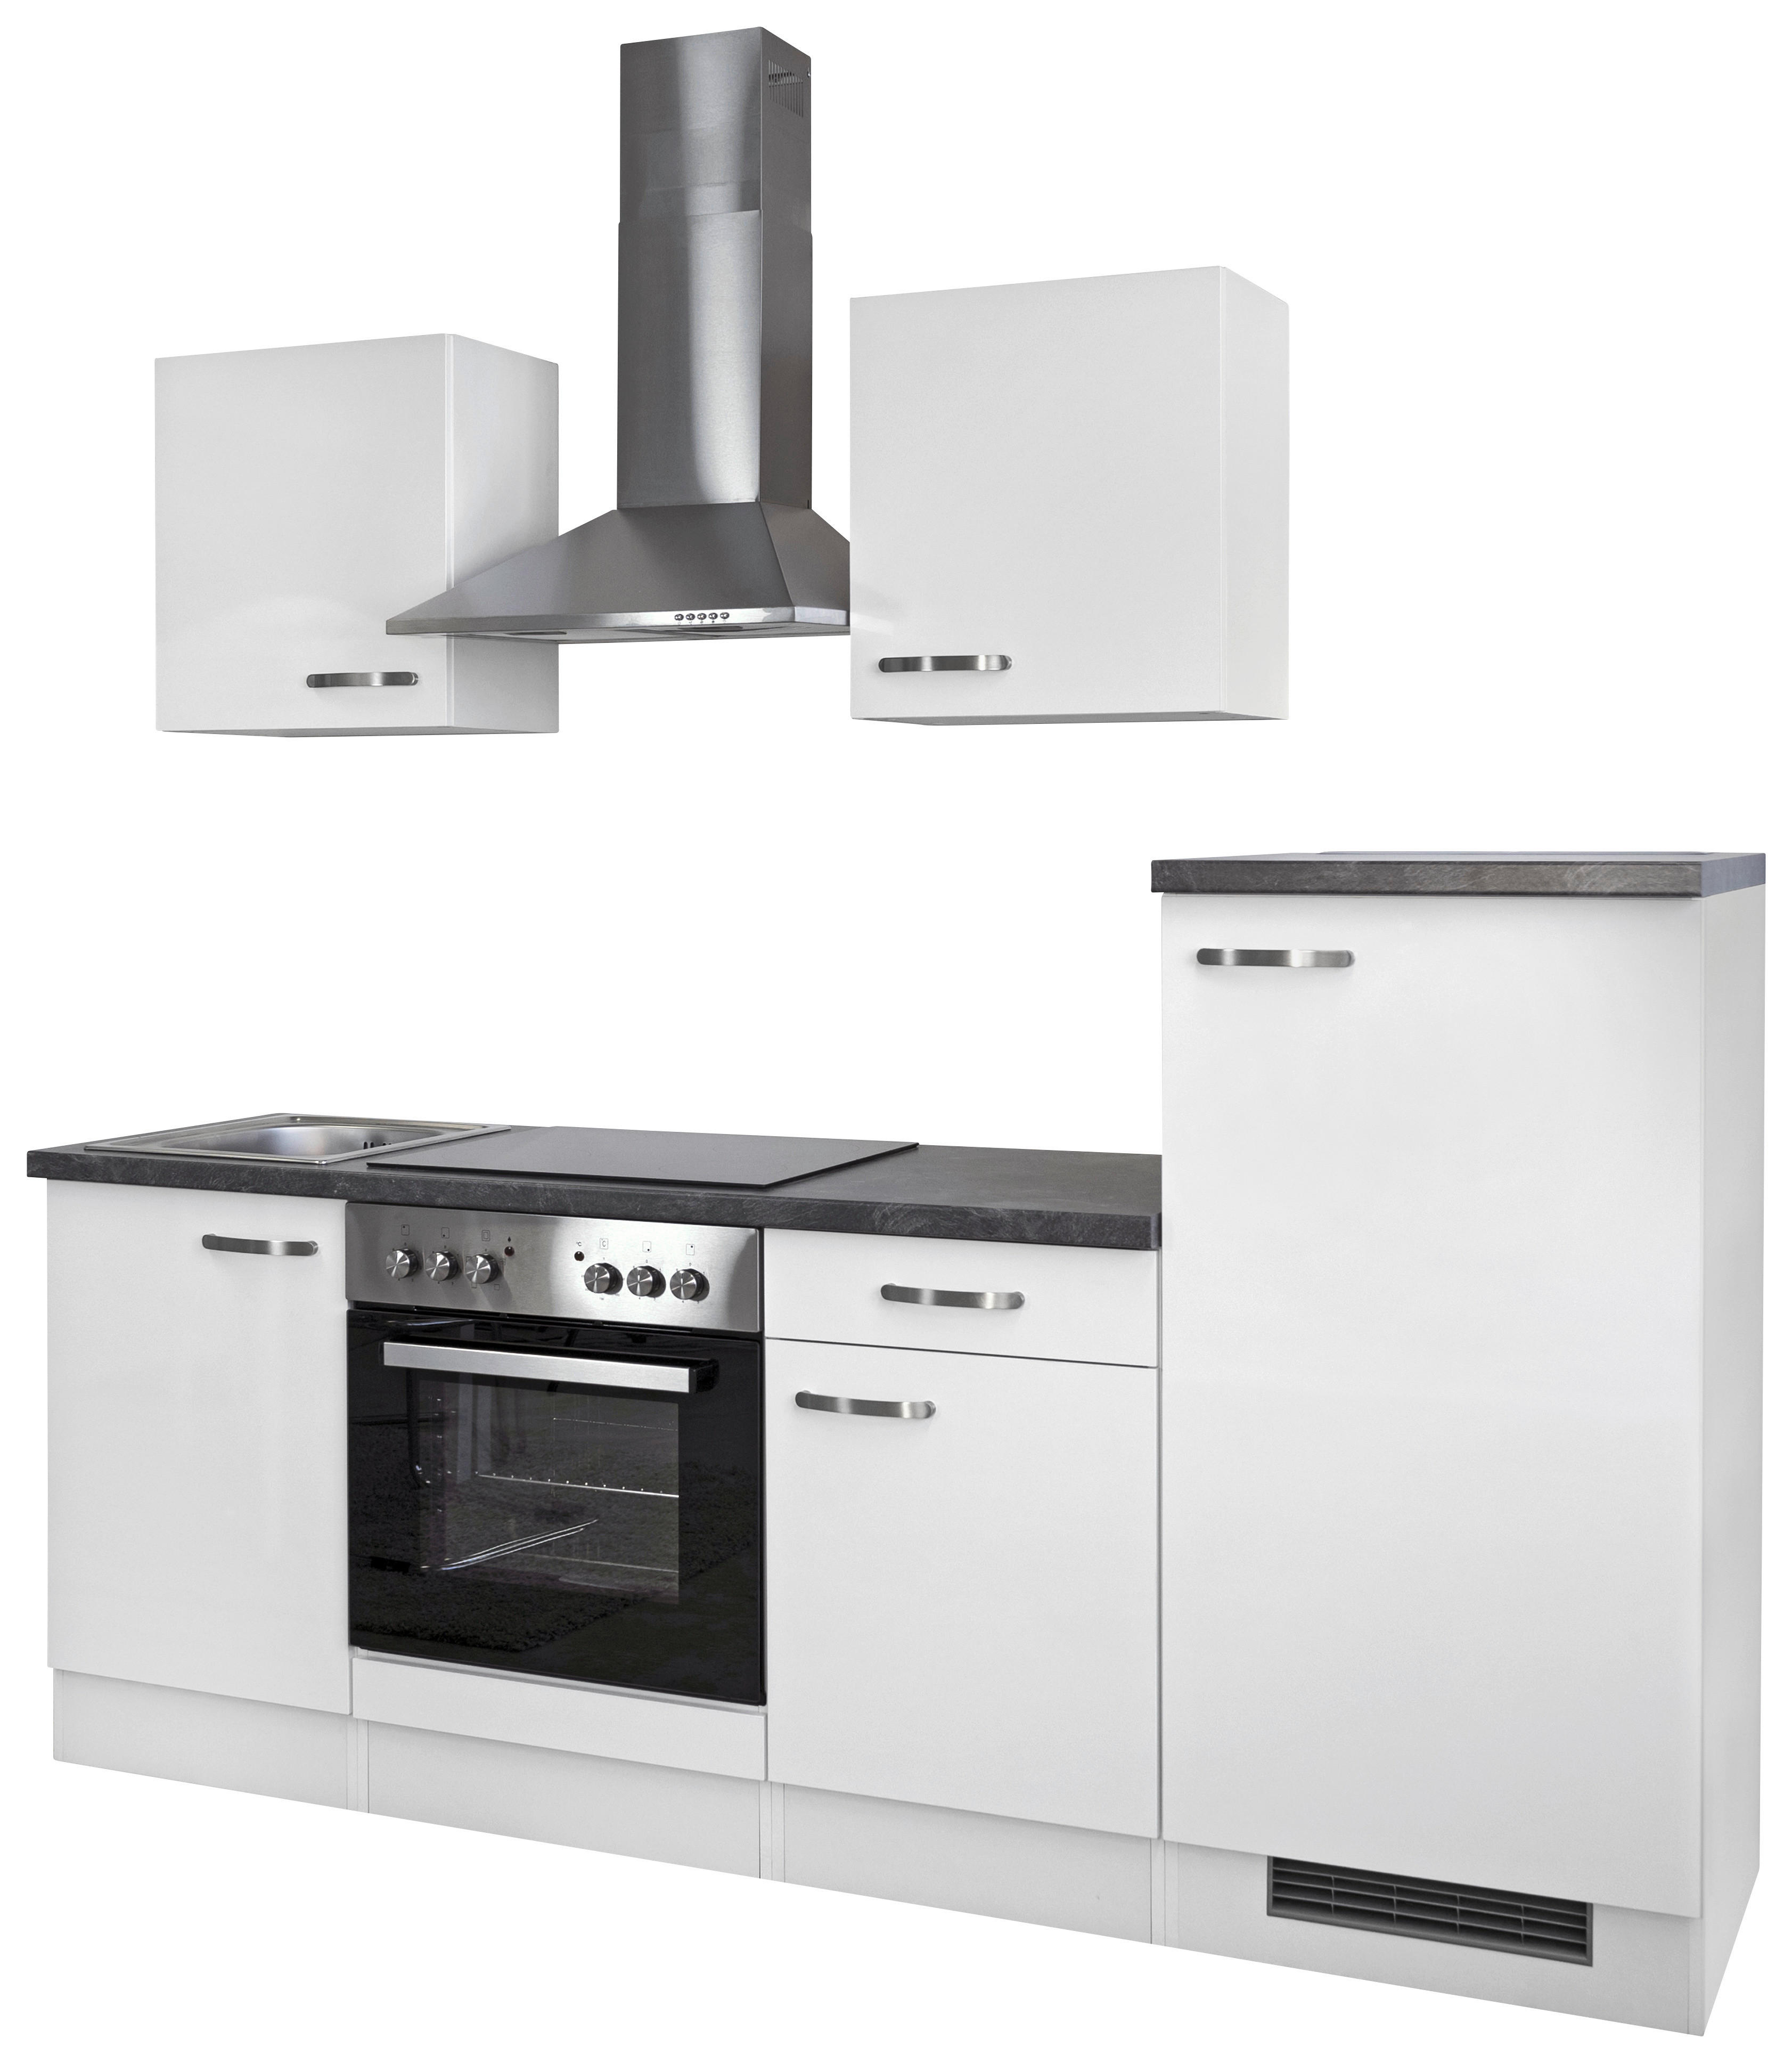 Küchenblock ALBA  220 cm  Weiß, Schieferfarben E-Geräte, Spüle  - Schieferfarben/Weiß, MODERN (220cm) - MID.YOU